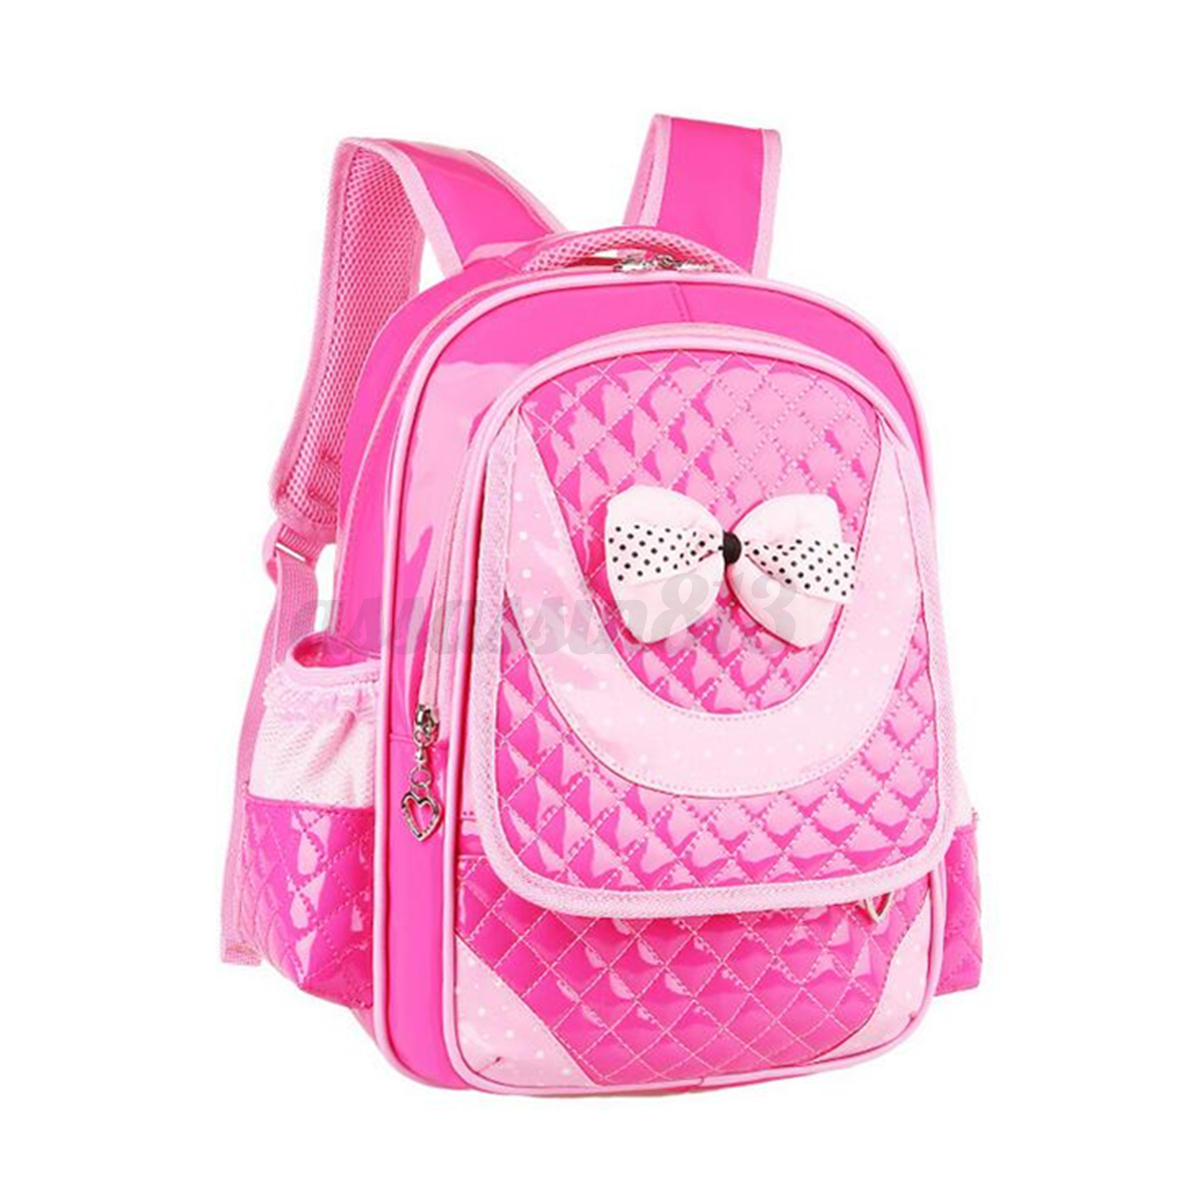 Kids Bowknot Children Backpack Girls Leather School Travel Shoulder Bag ...